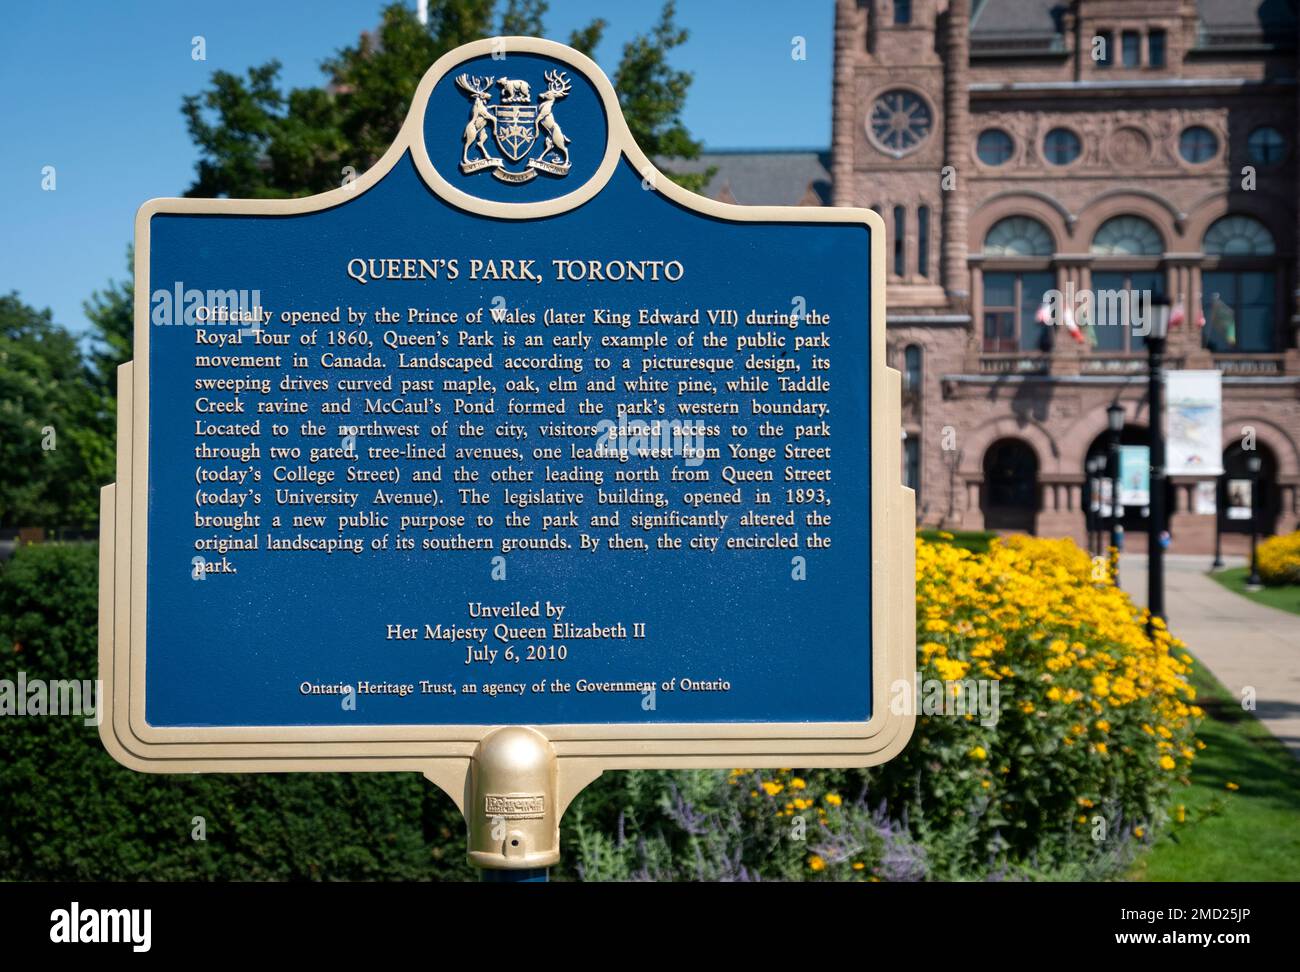 Panneau bleu de la Fiducie du patrimoine ontarien devant l'édifice de l'Assemblée législative de l'Ontario en été, Queens Park, Toronto, Canada Banque D'Images